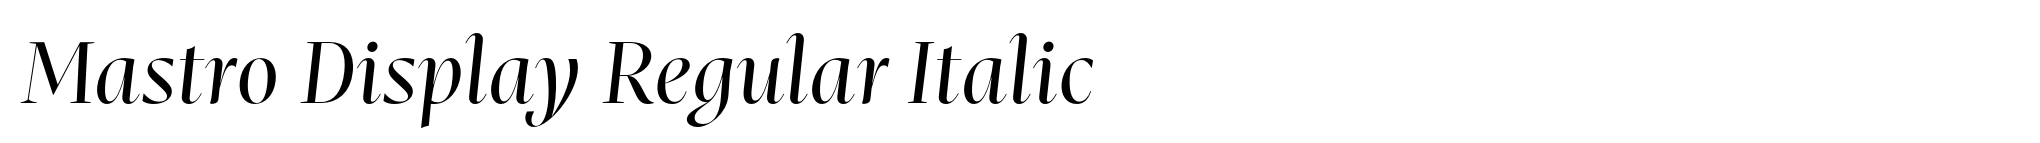 Mastro Display Regular Italic image